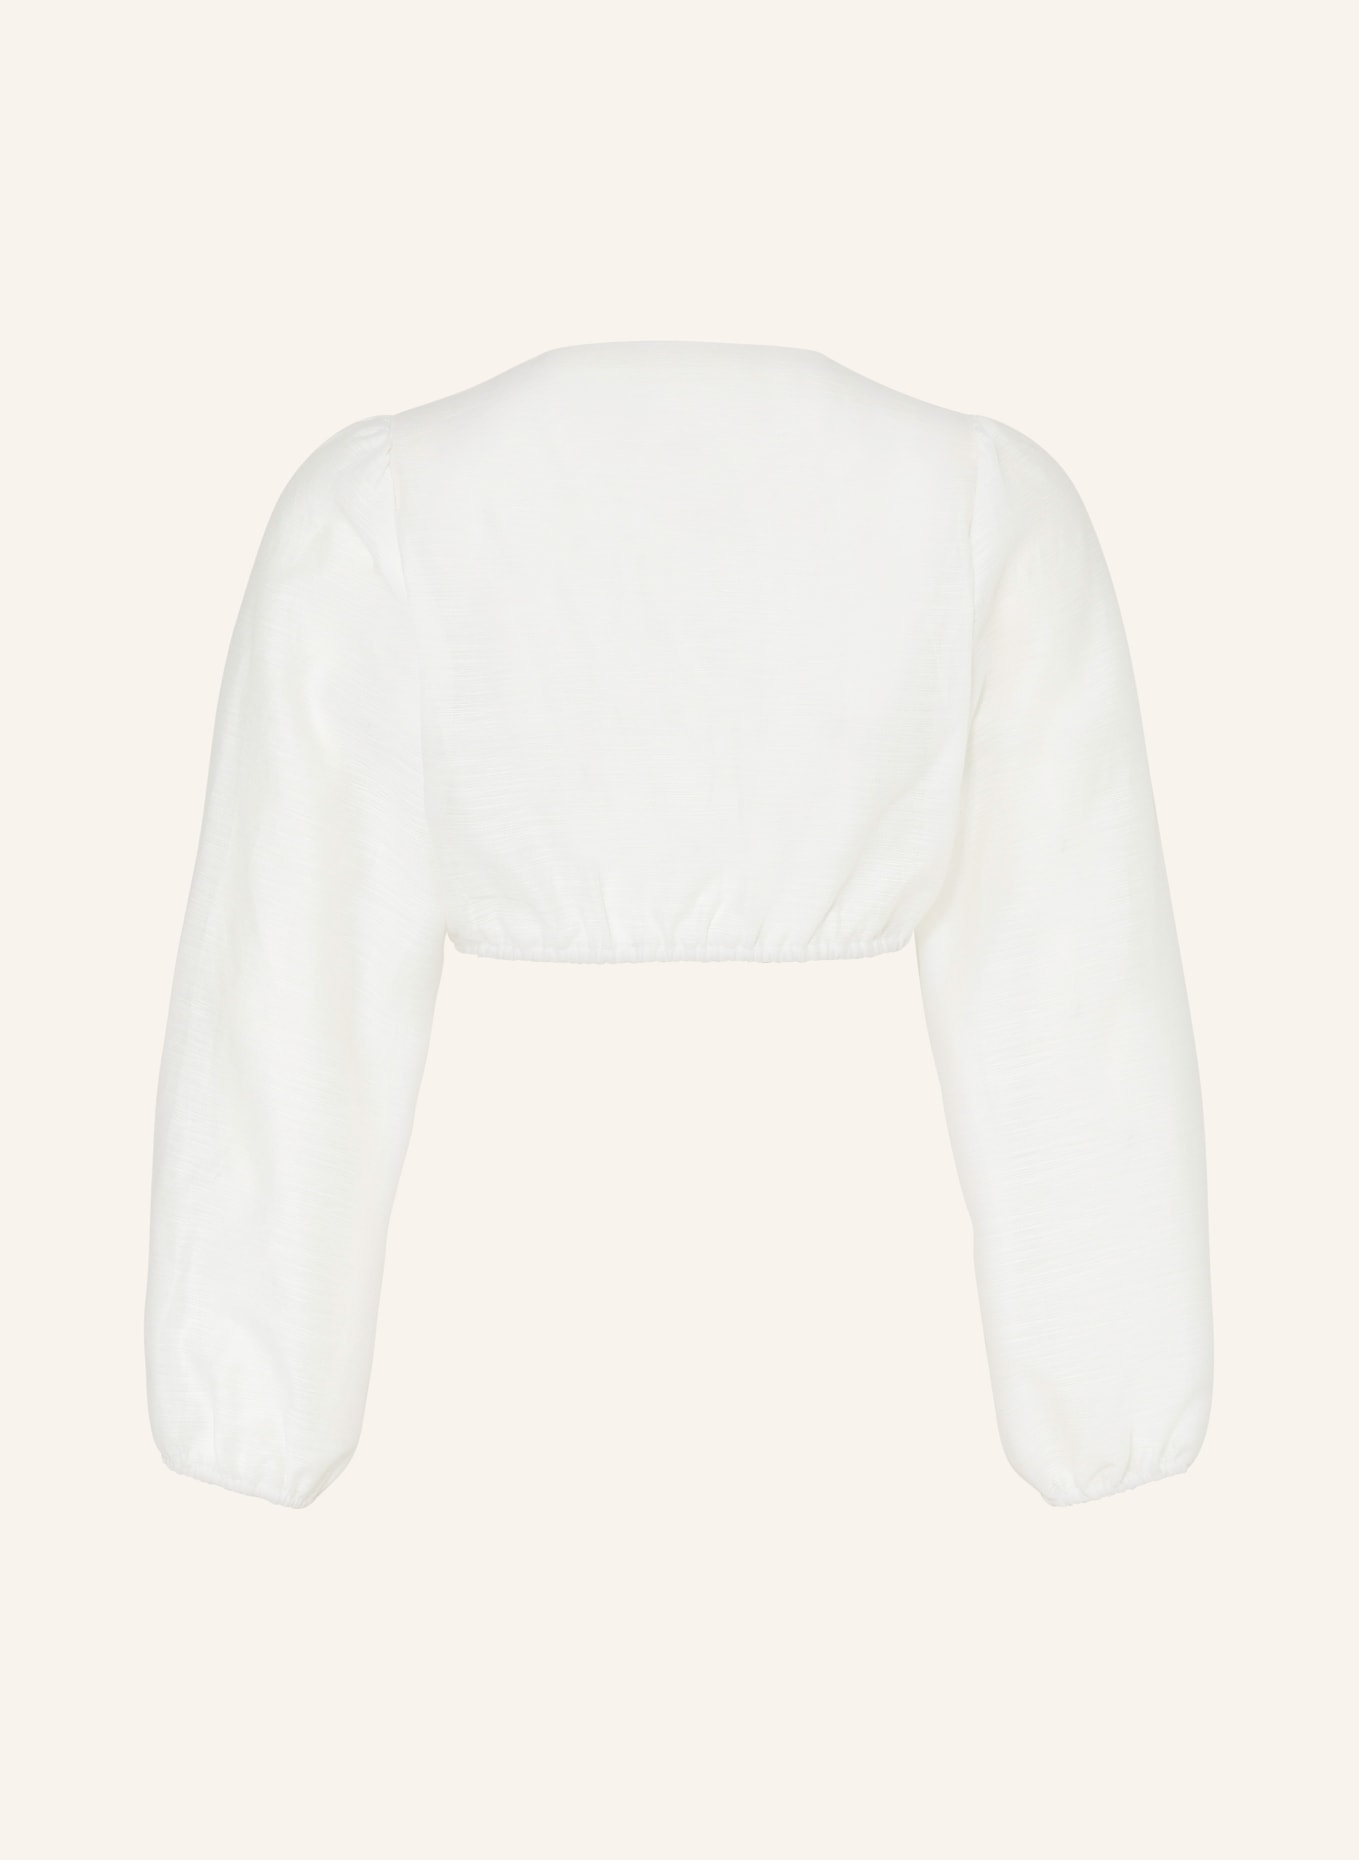 SPORTALM Dirndl blouse, Color: CREAM (Image 2)